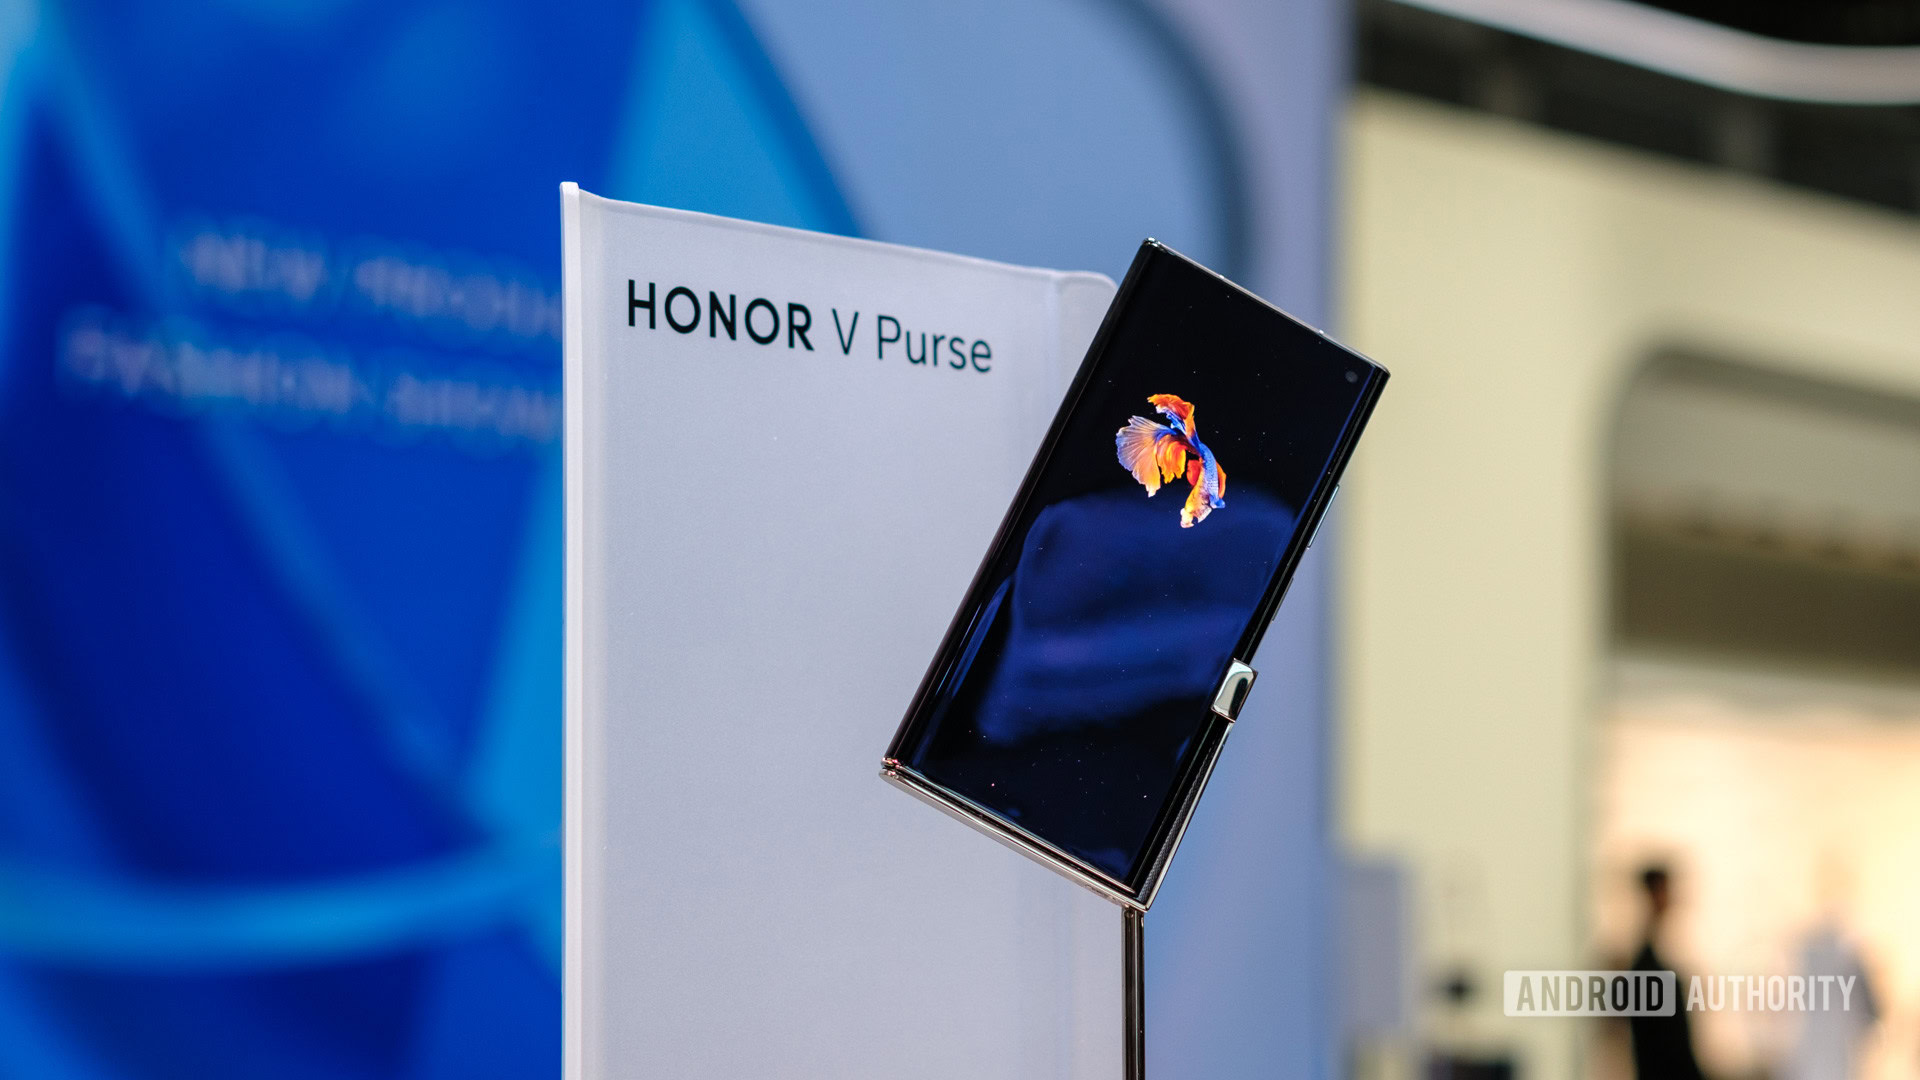 Honor V Purse 5G Foldable Phone 7.71'' 16GB 512GB